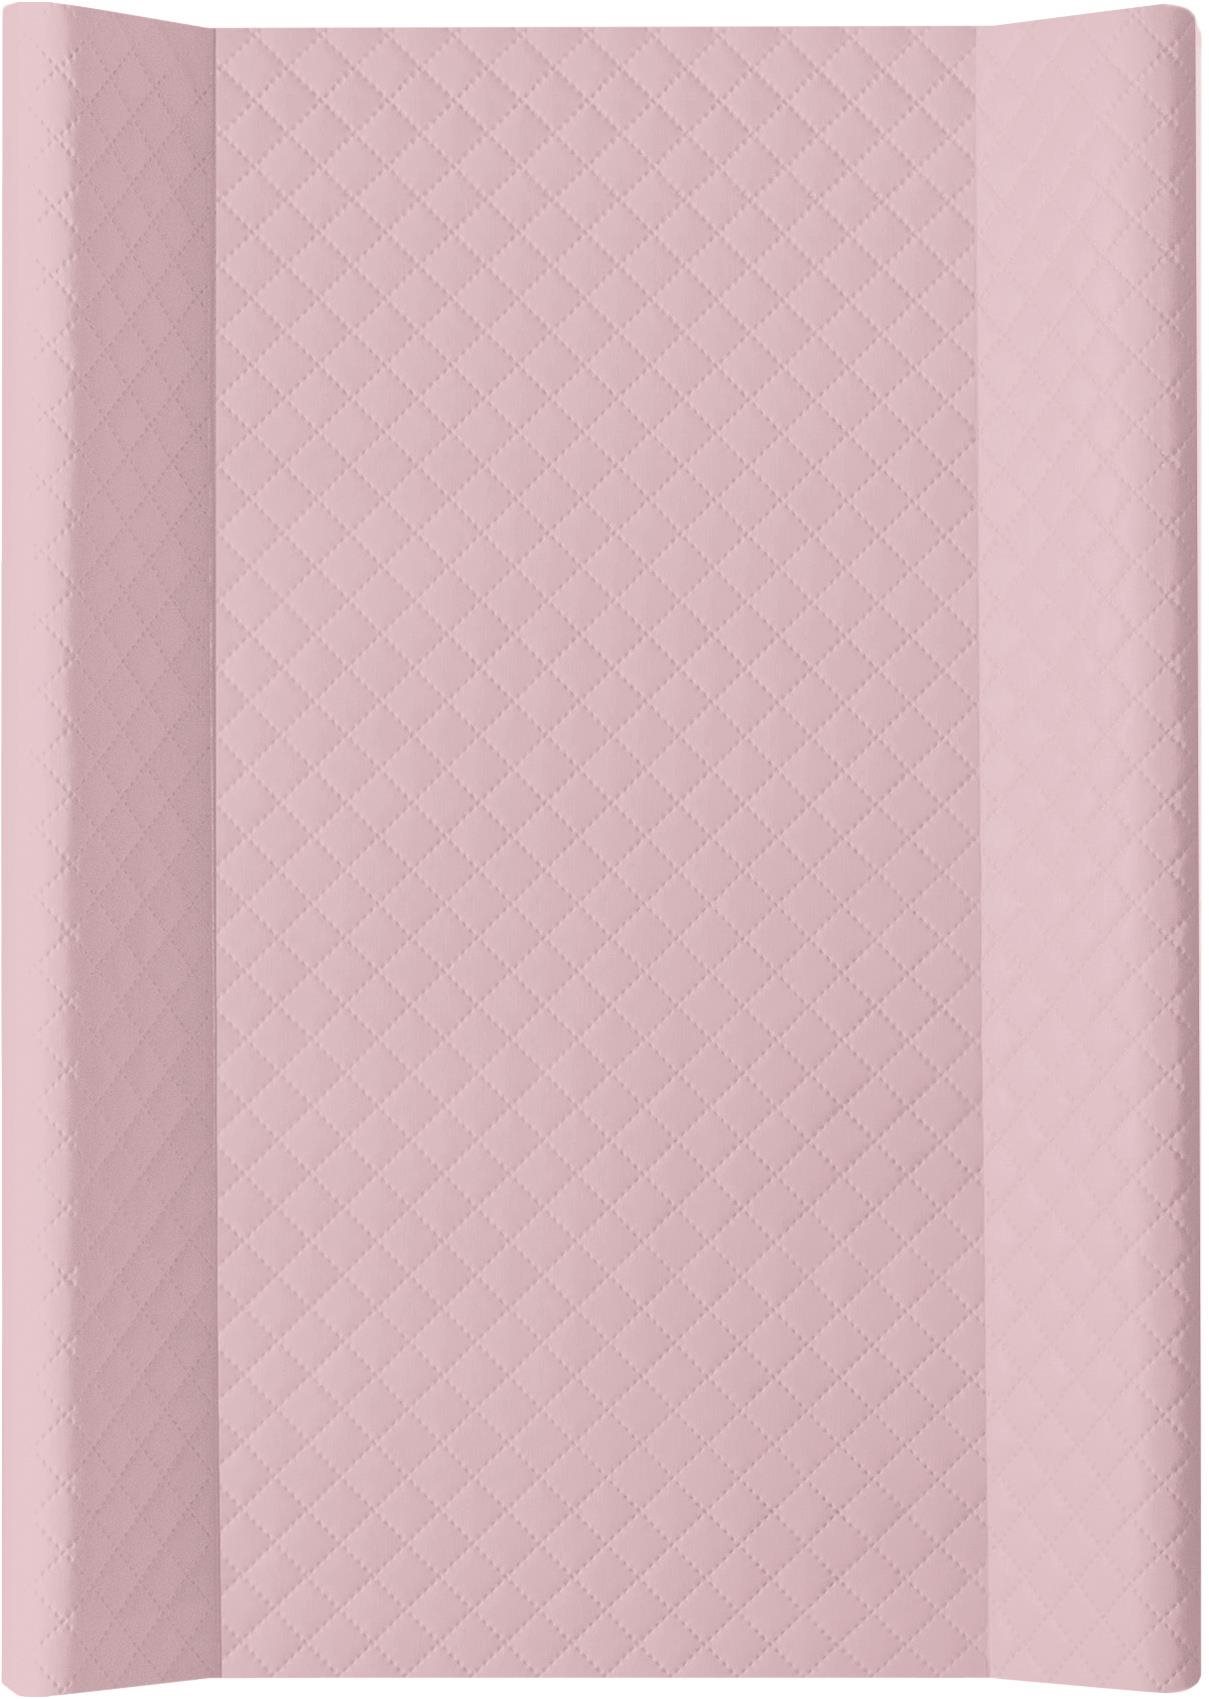 CEBA BABY Comfort Caro Pelenkázó alátét kemény lappal 50 × 70 cm, Pink